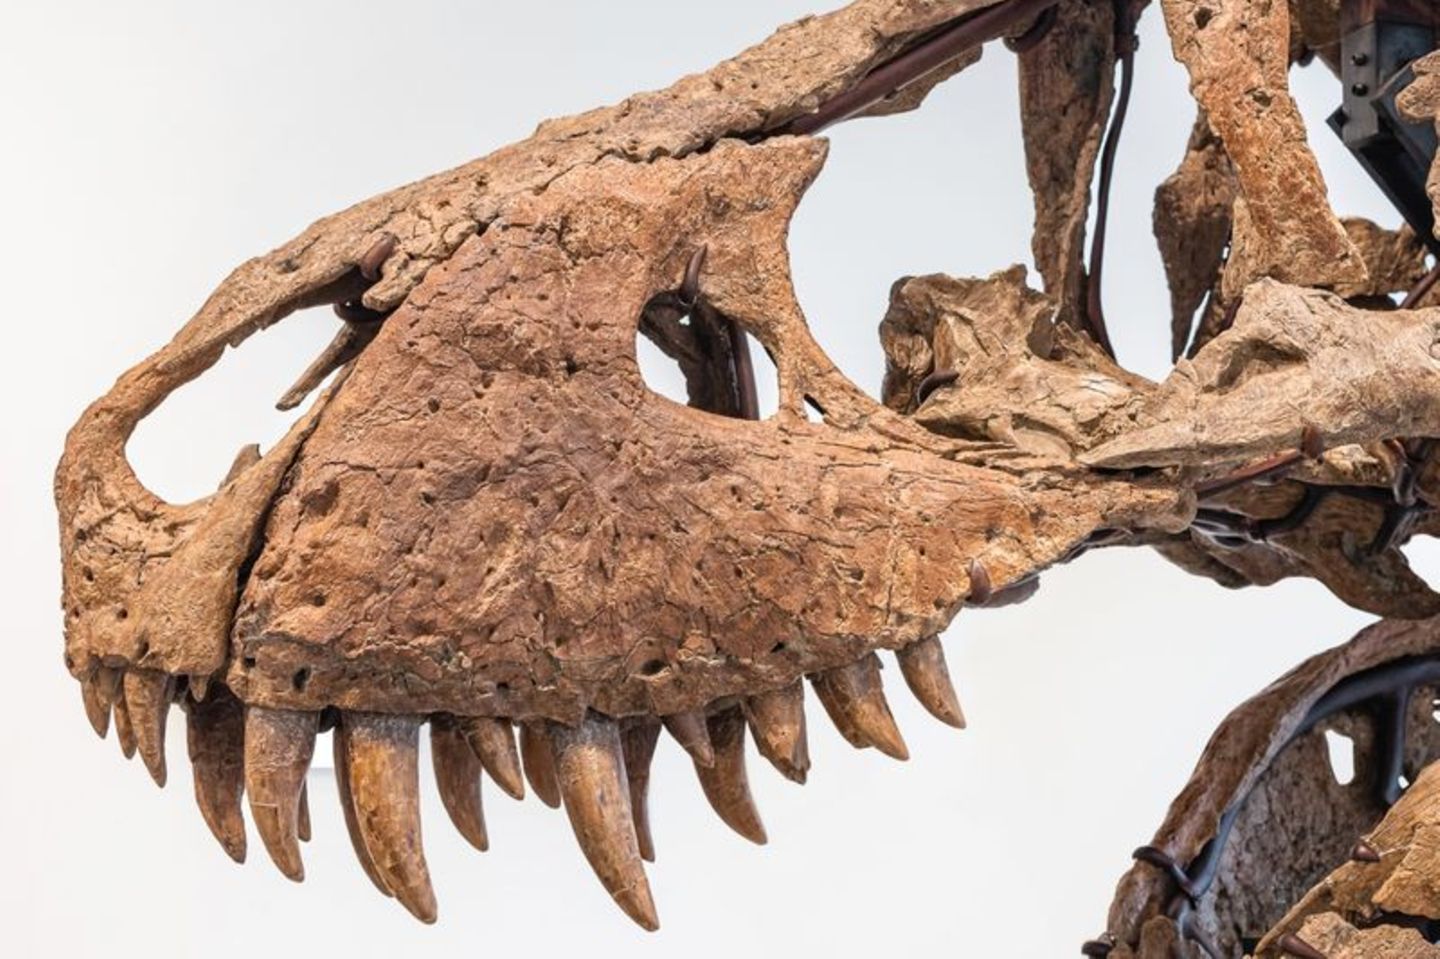 Der Tyrannosaurus-Schädel könnte bei einer Auktion in New York bis zu 20 Millionen US-Dollar einbringen. Foto: -/Sotheby's/dpa